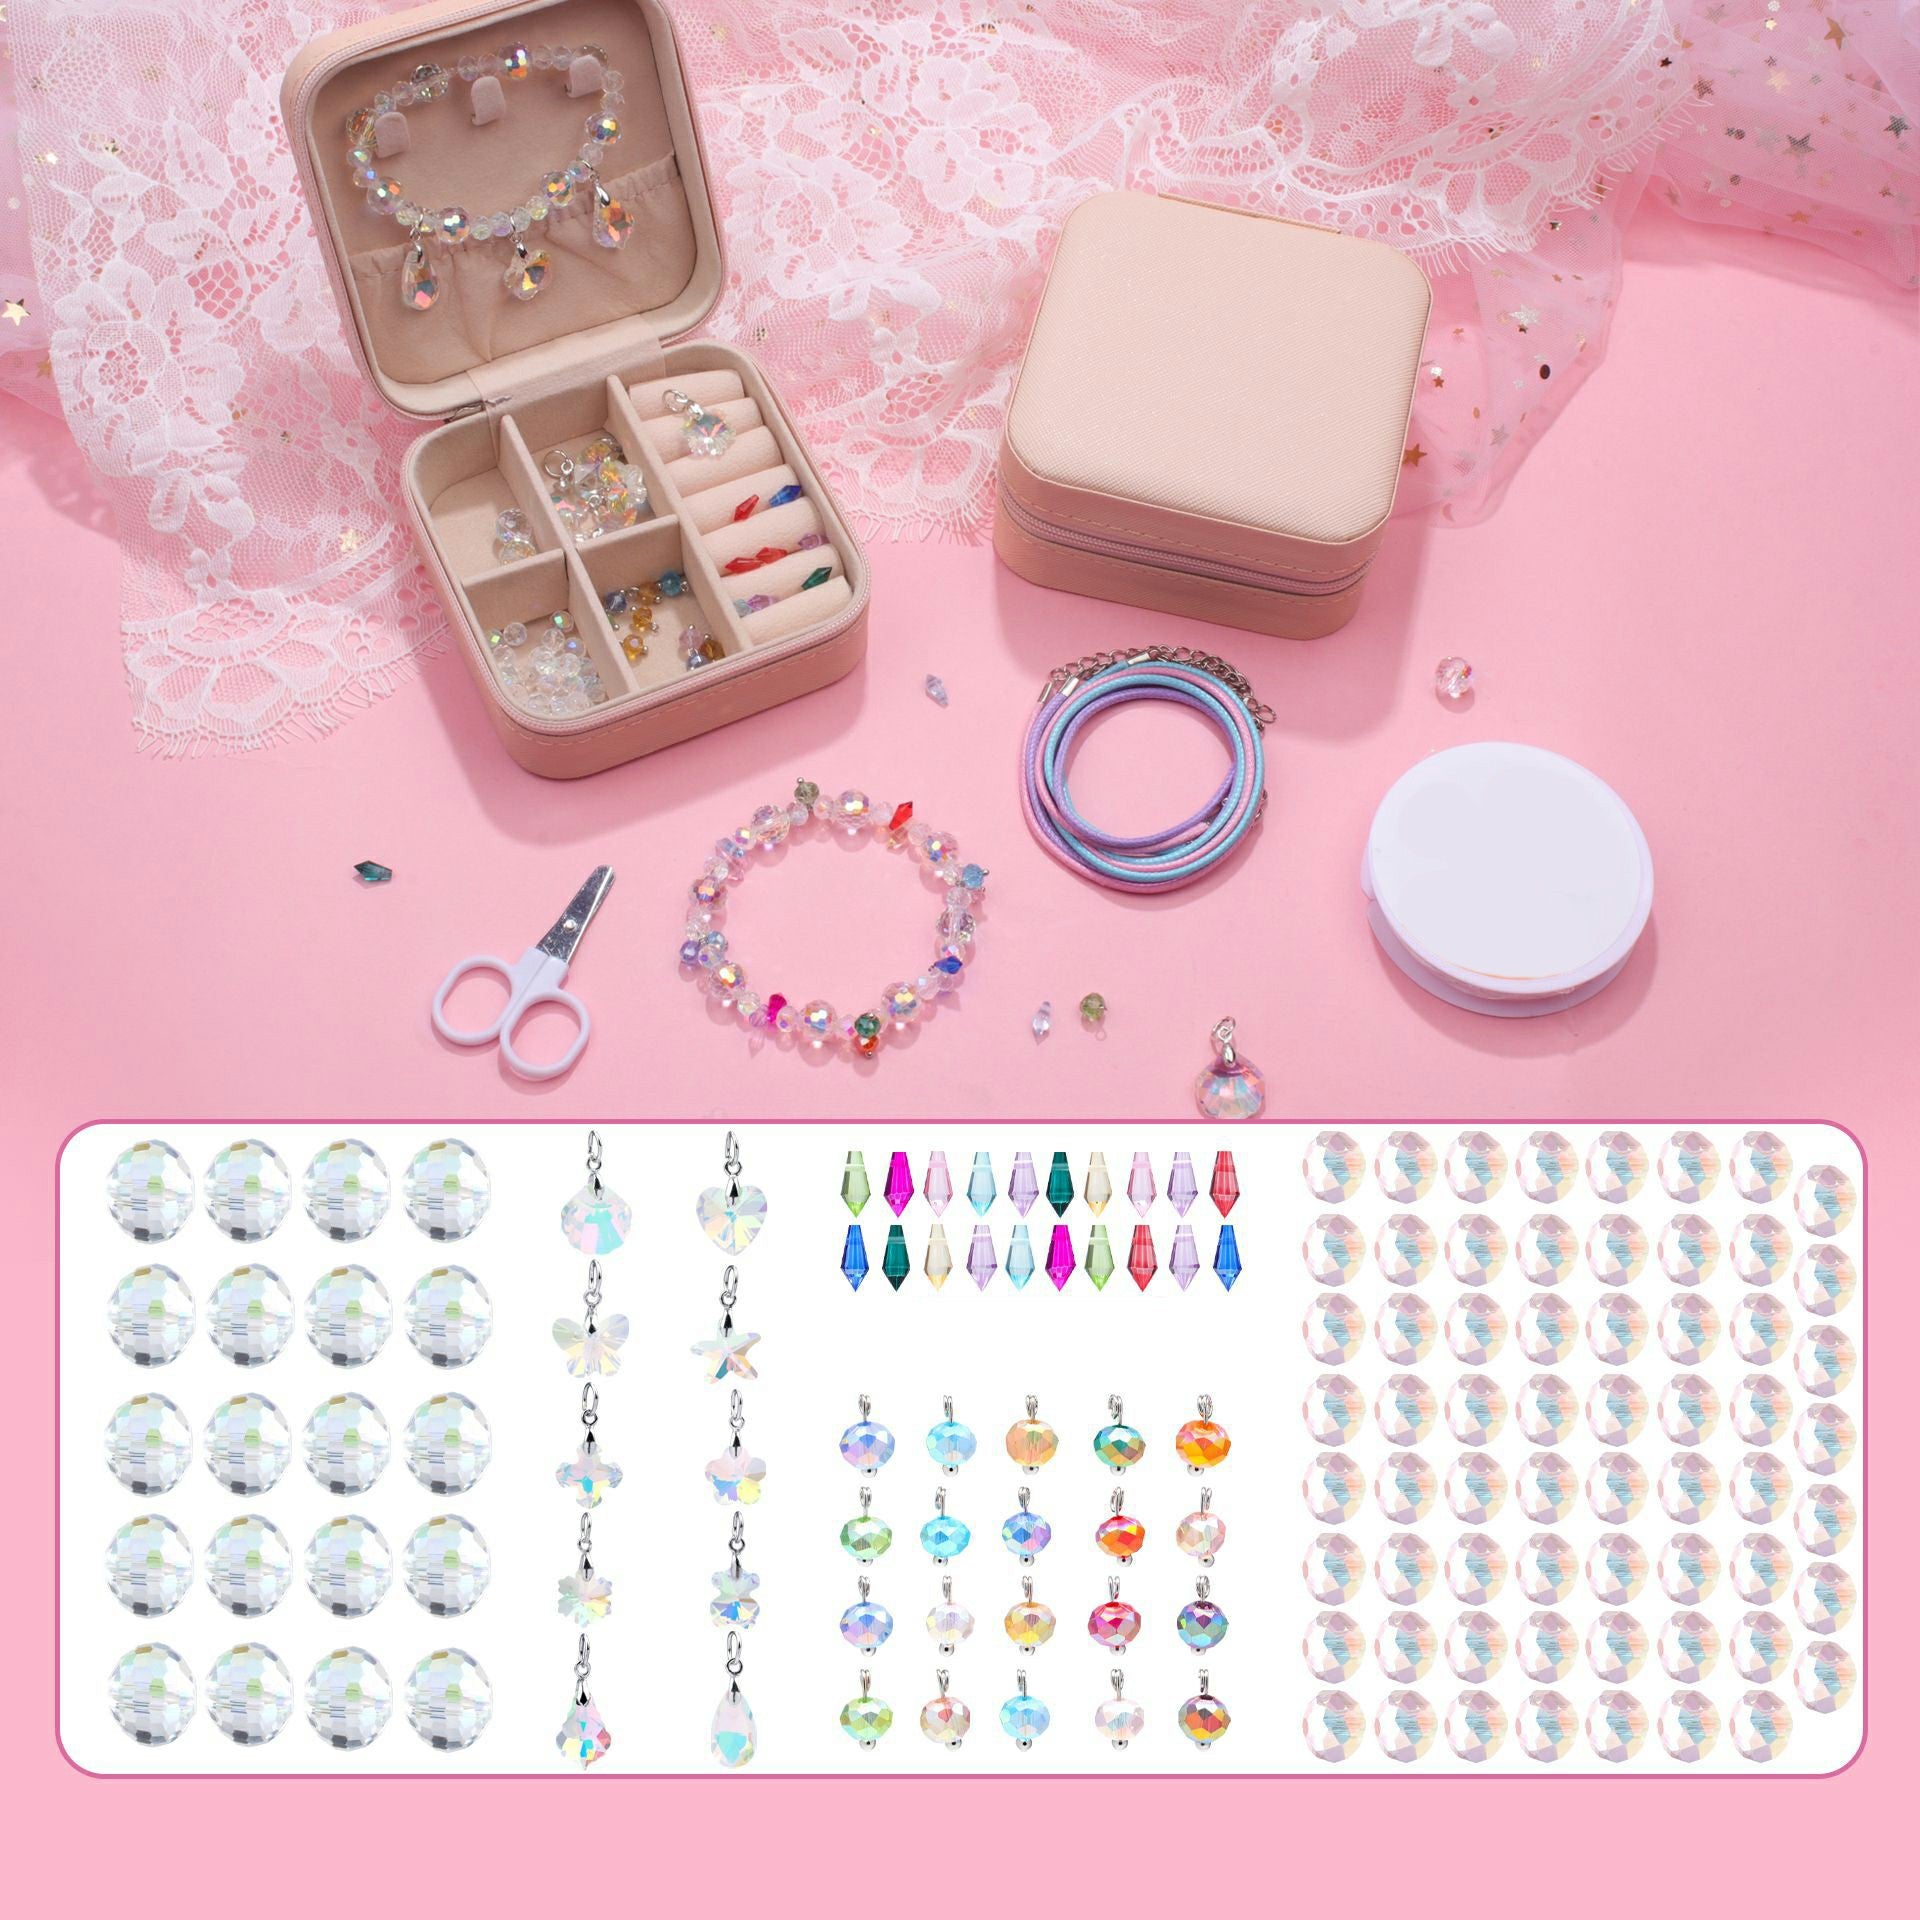 140Pcs / Set Kids Girls DIY Jewellery Craft Bracelet Making Supplies Kit with Gift Box - White